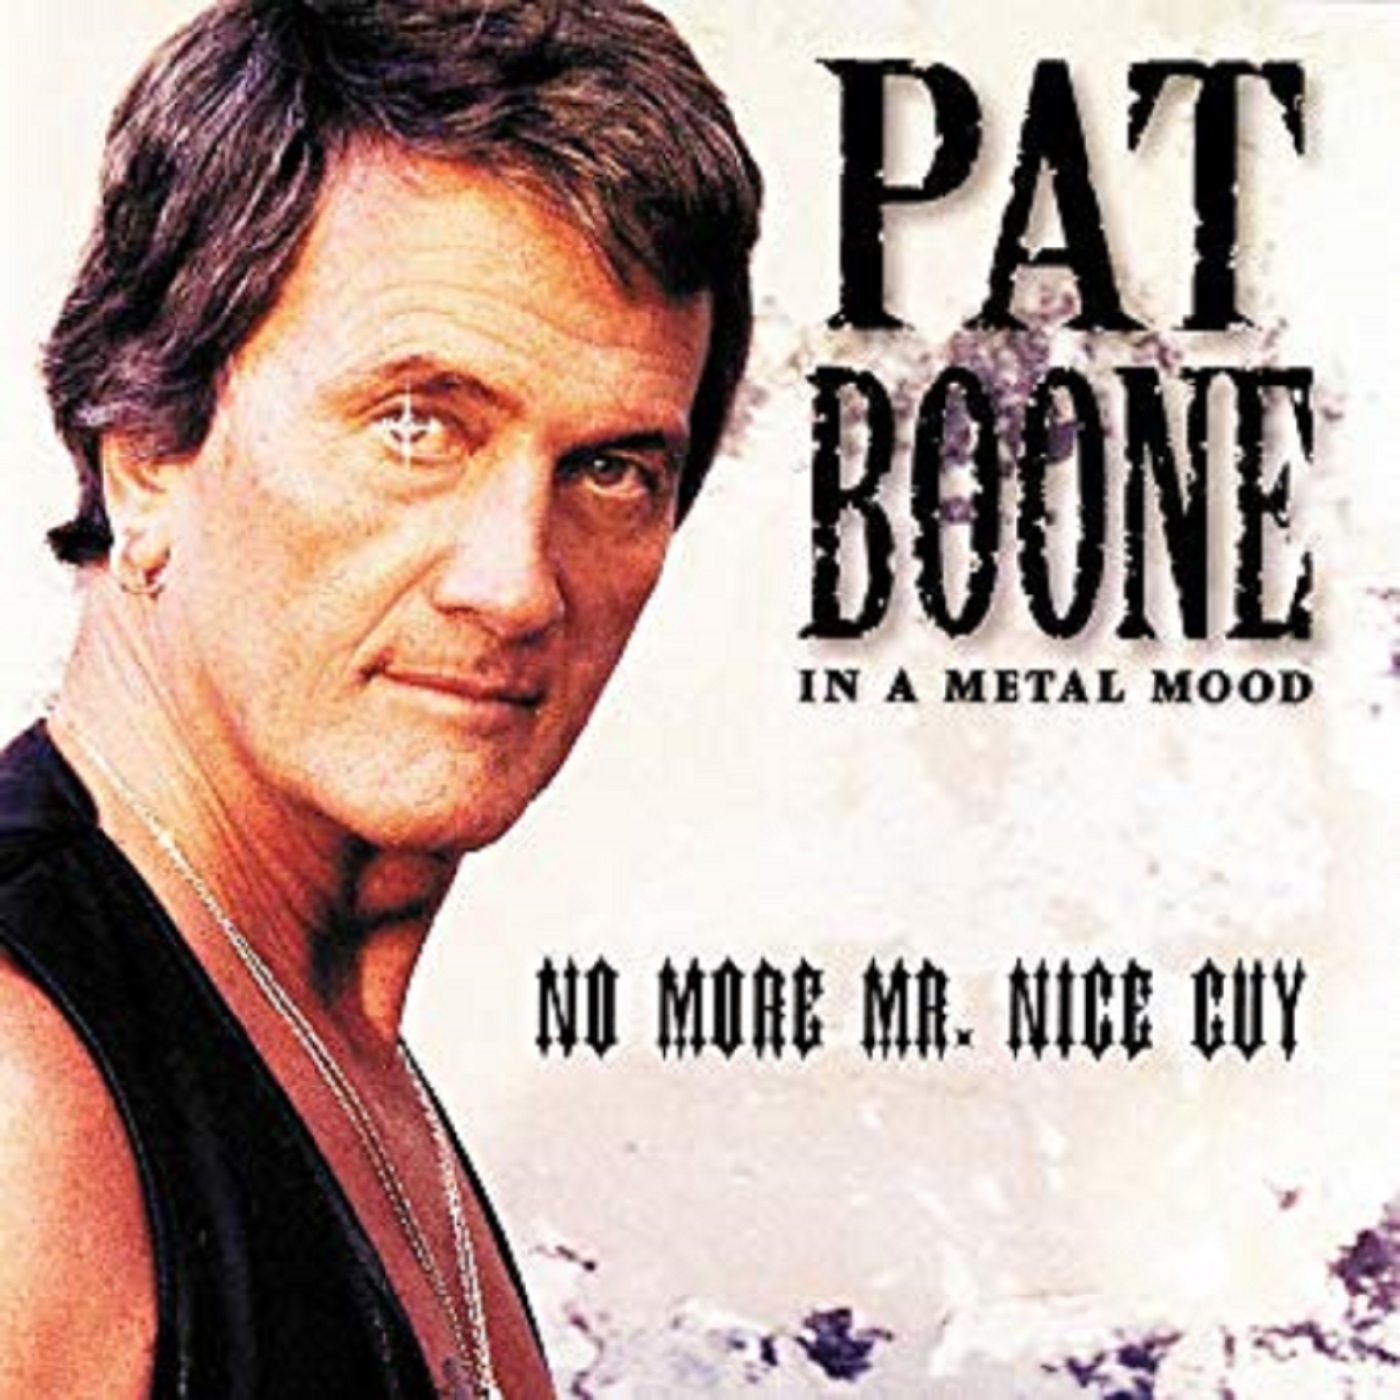 Pat Boone's 